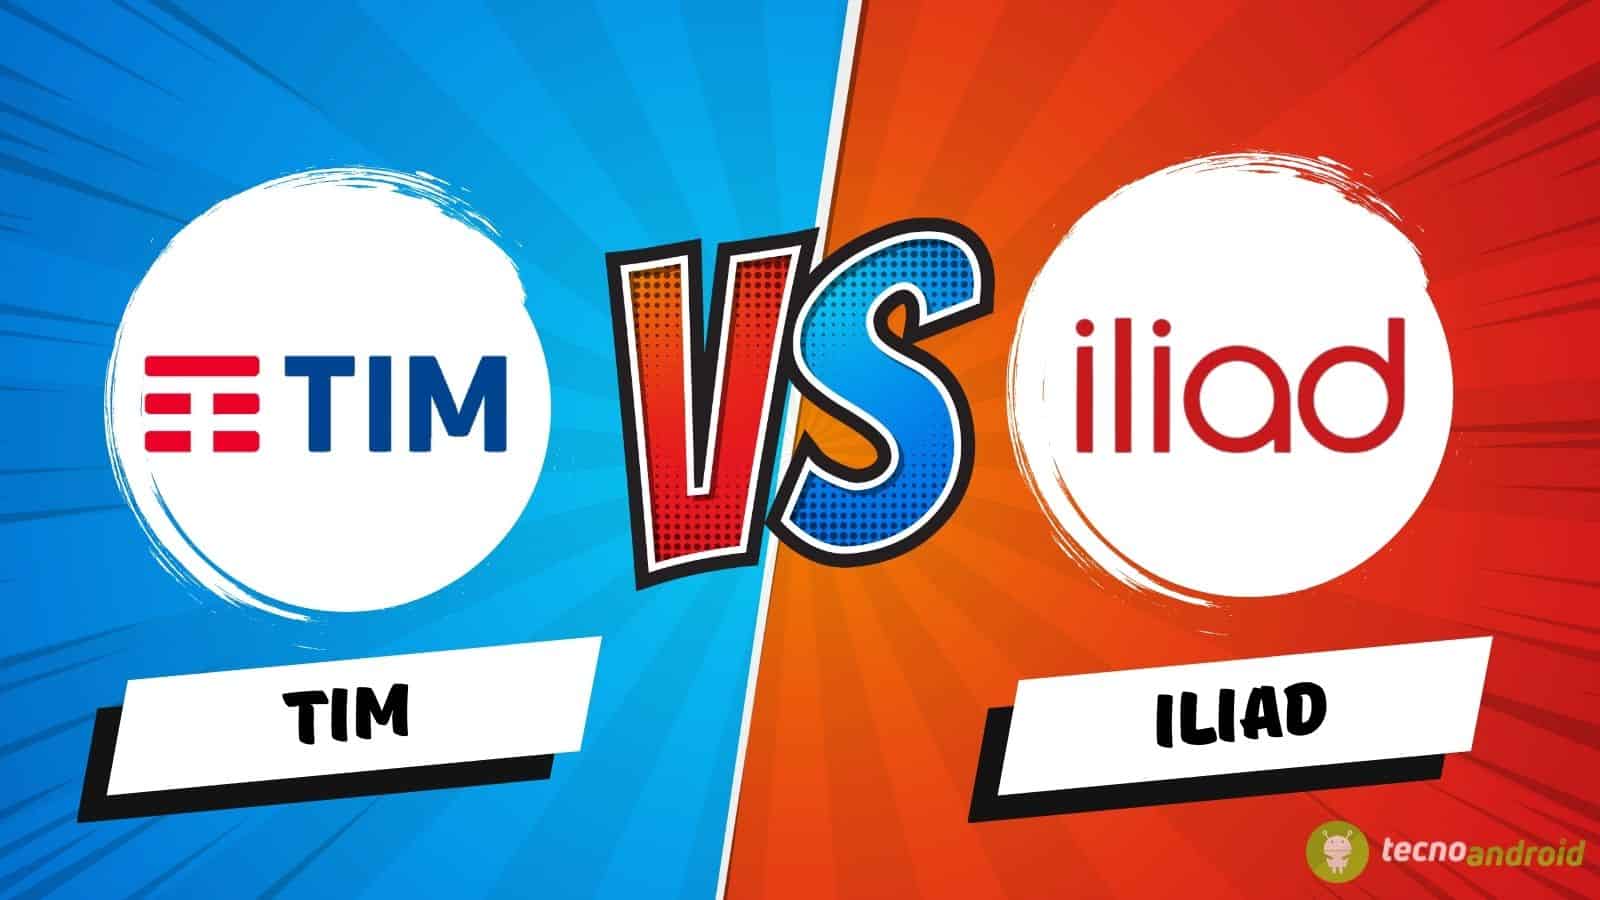 TIM VS Iliad, ecco le offerte fino a 300 GB che si sfidano col 5G